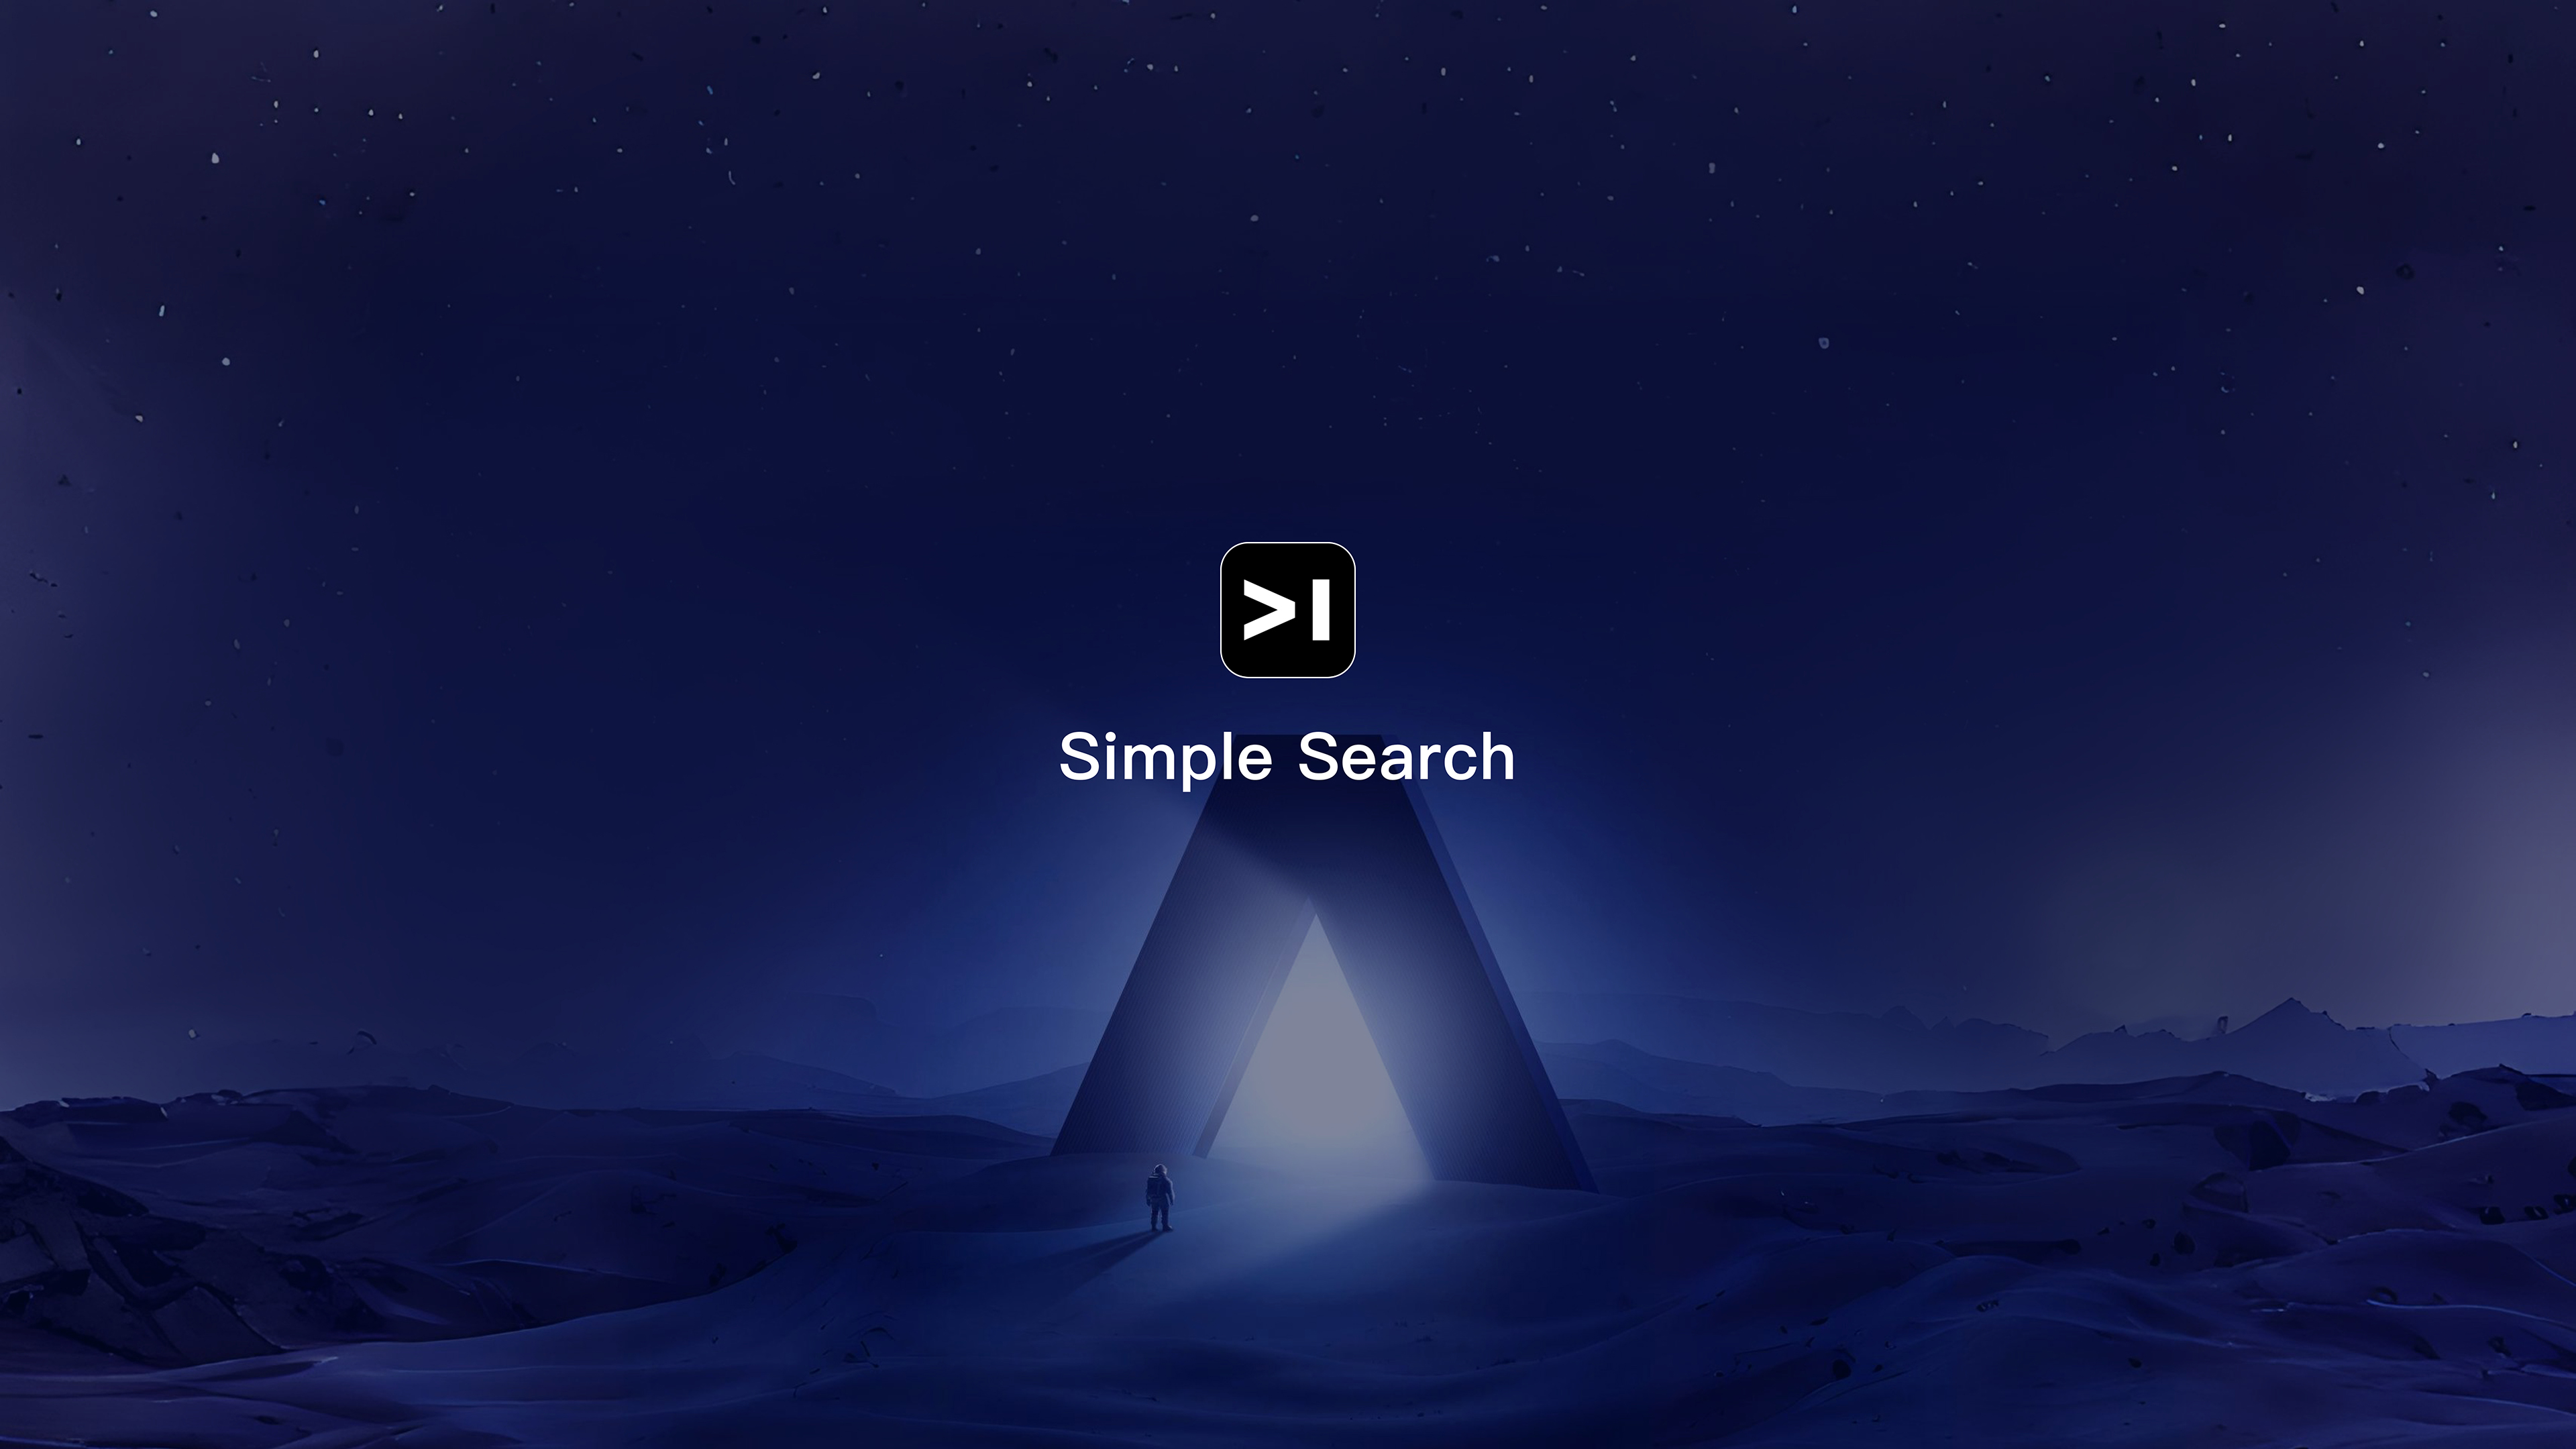 Simple search-AI interactive search